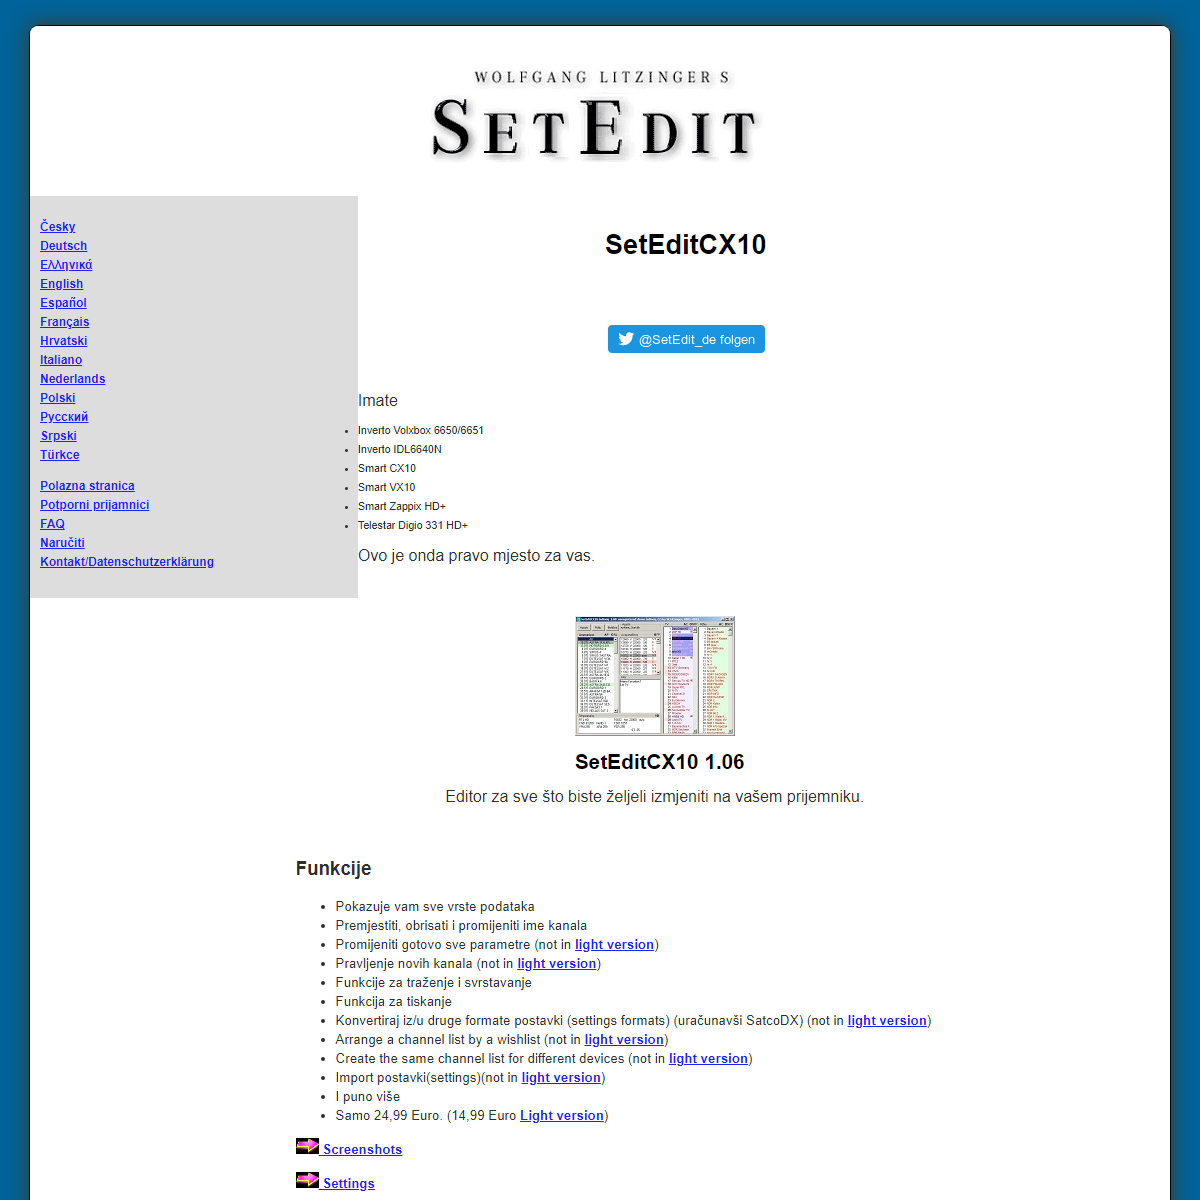 A complete backup of https://www.setedit.de/SetEdit.php?spr=13&Editor=138